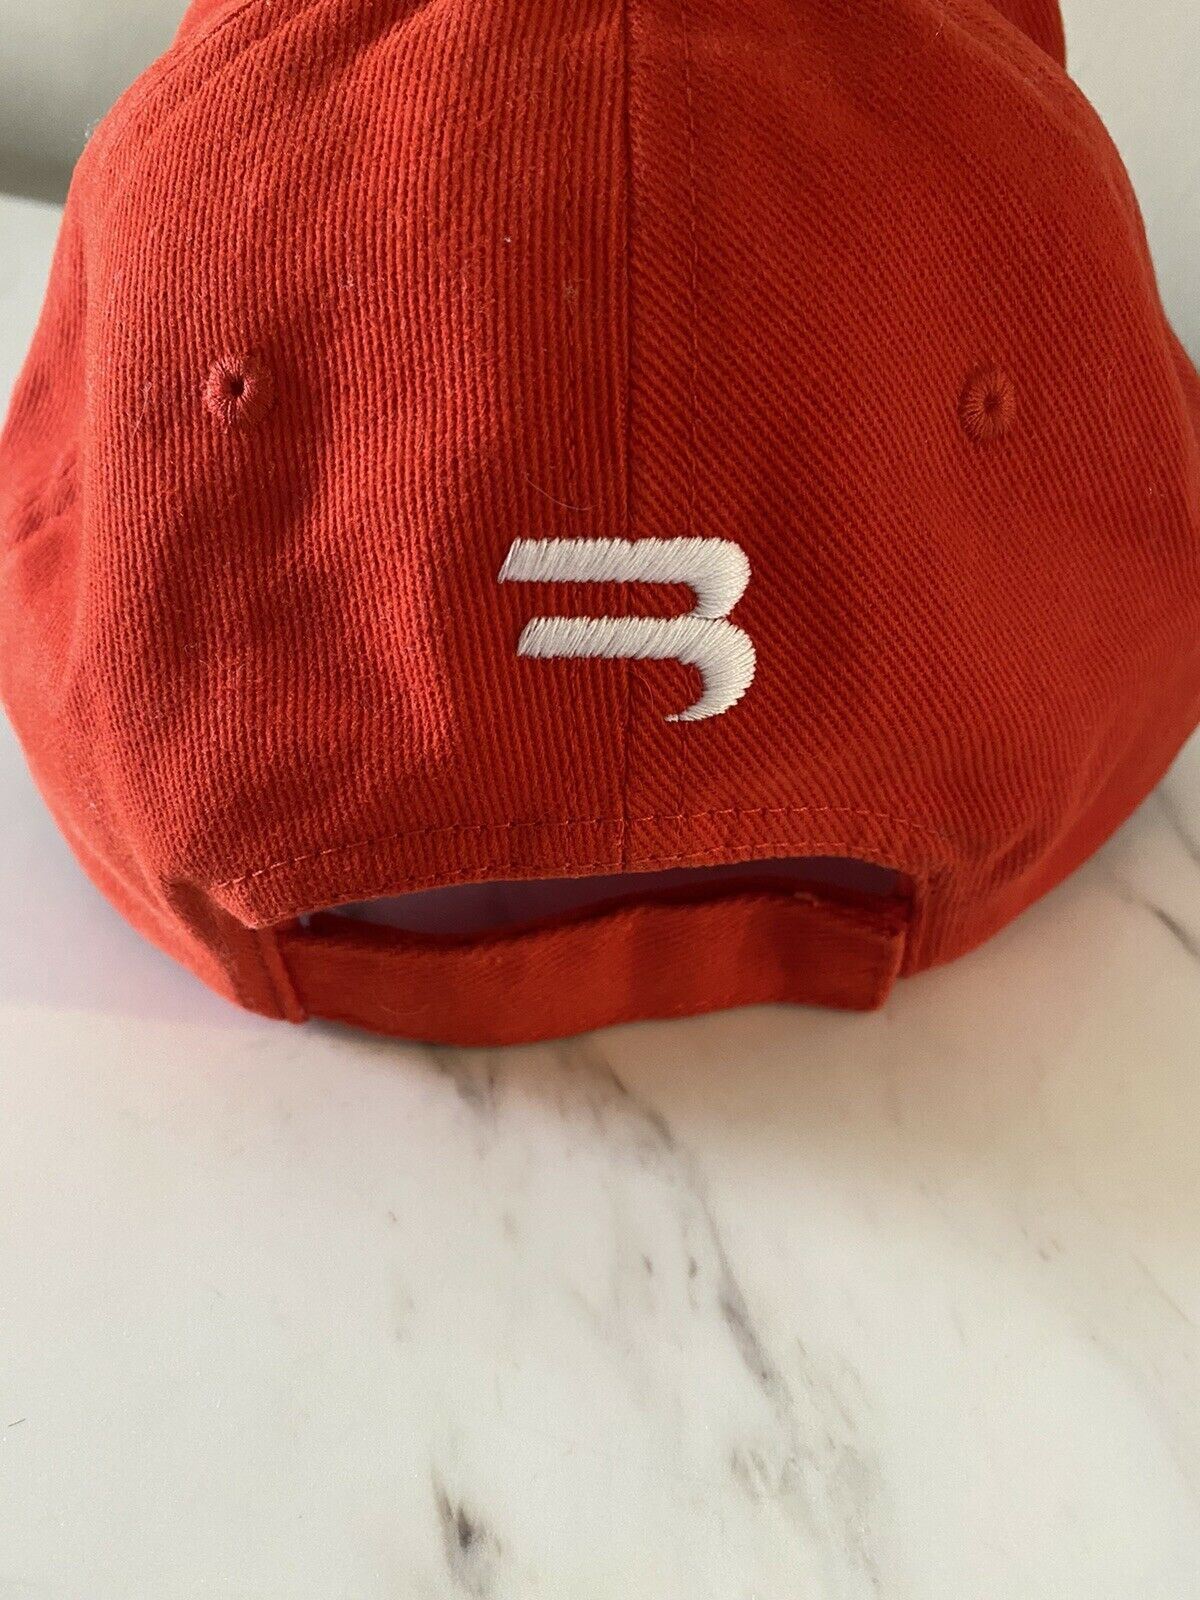 Neu mit Etikett: Balenciaga Herren-Trucker-Mütze, Rot, Größe L, Italien